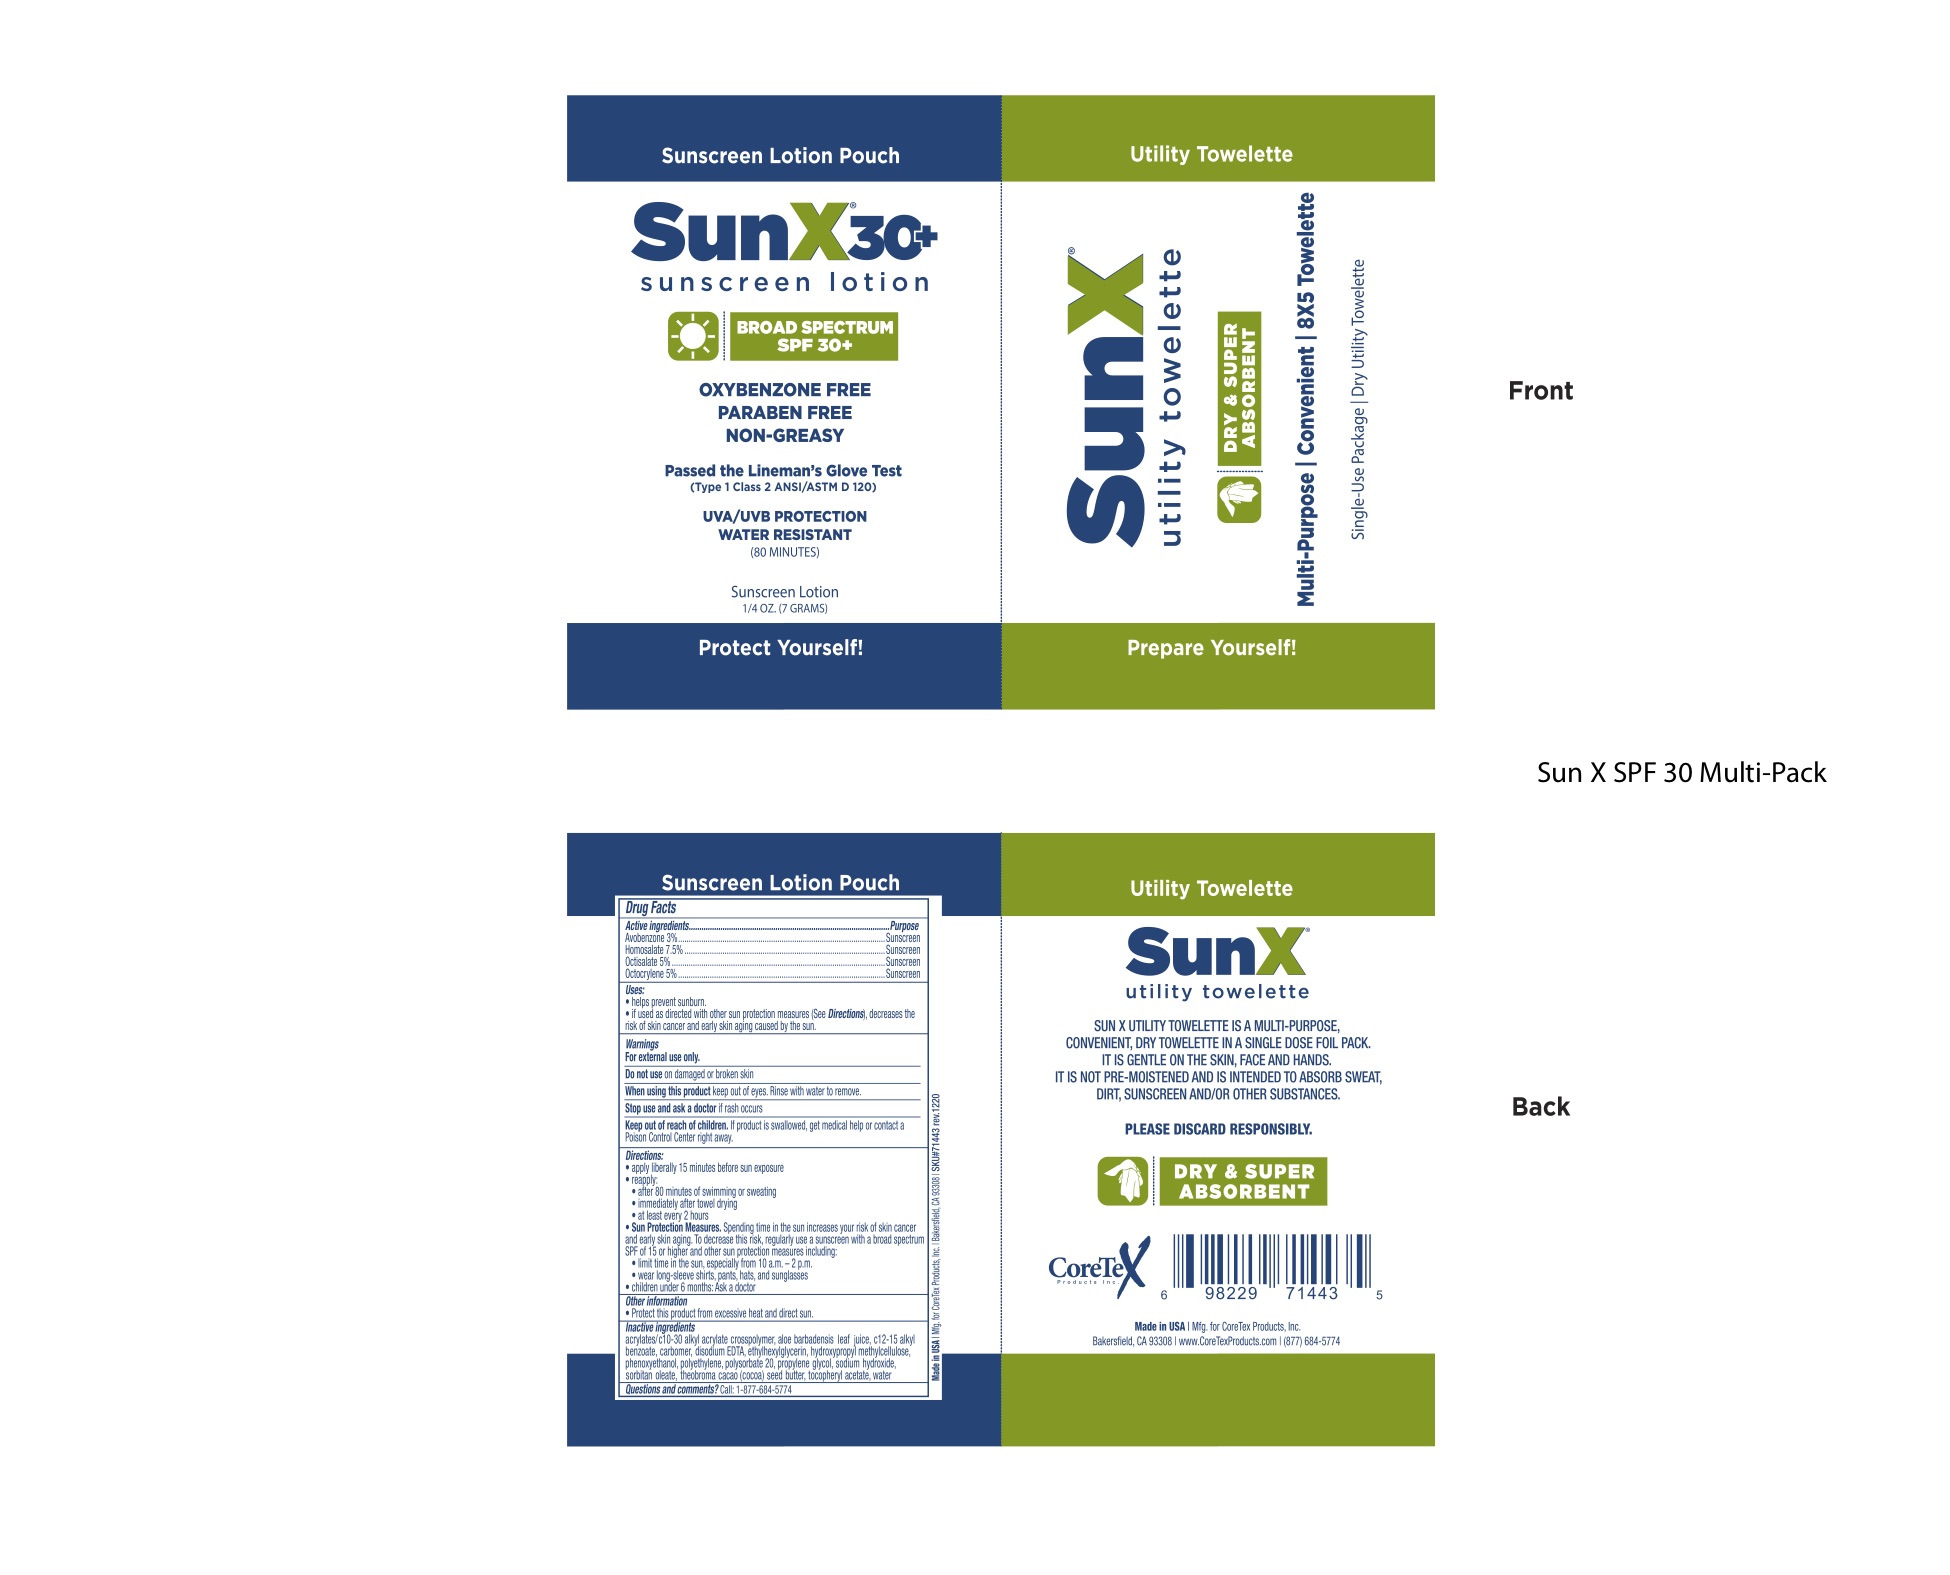 SunX 30 new multipack